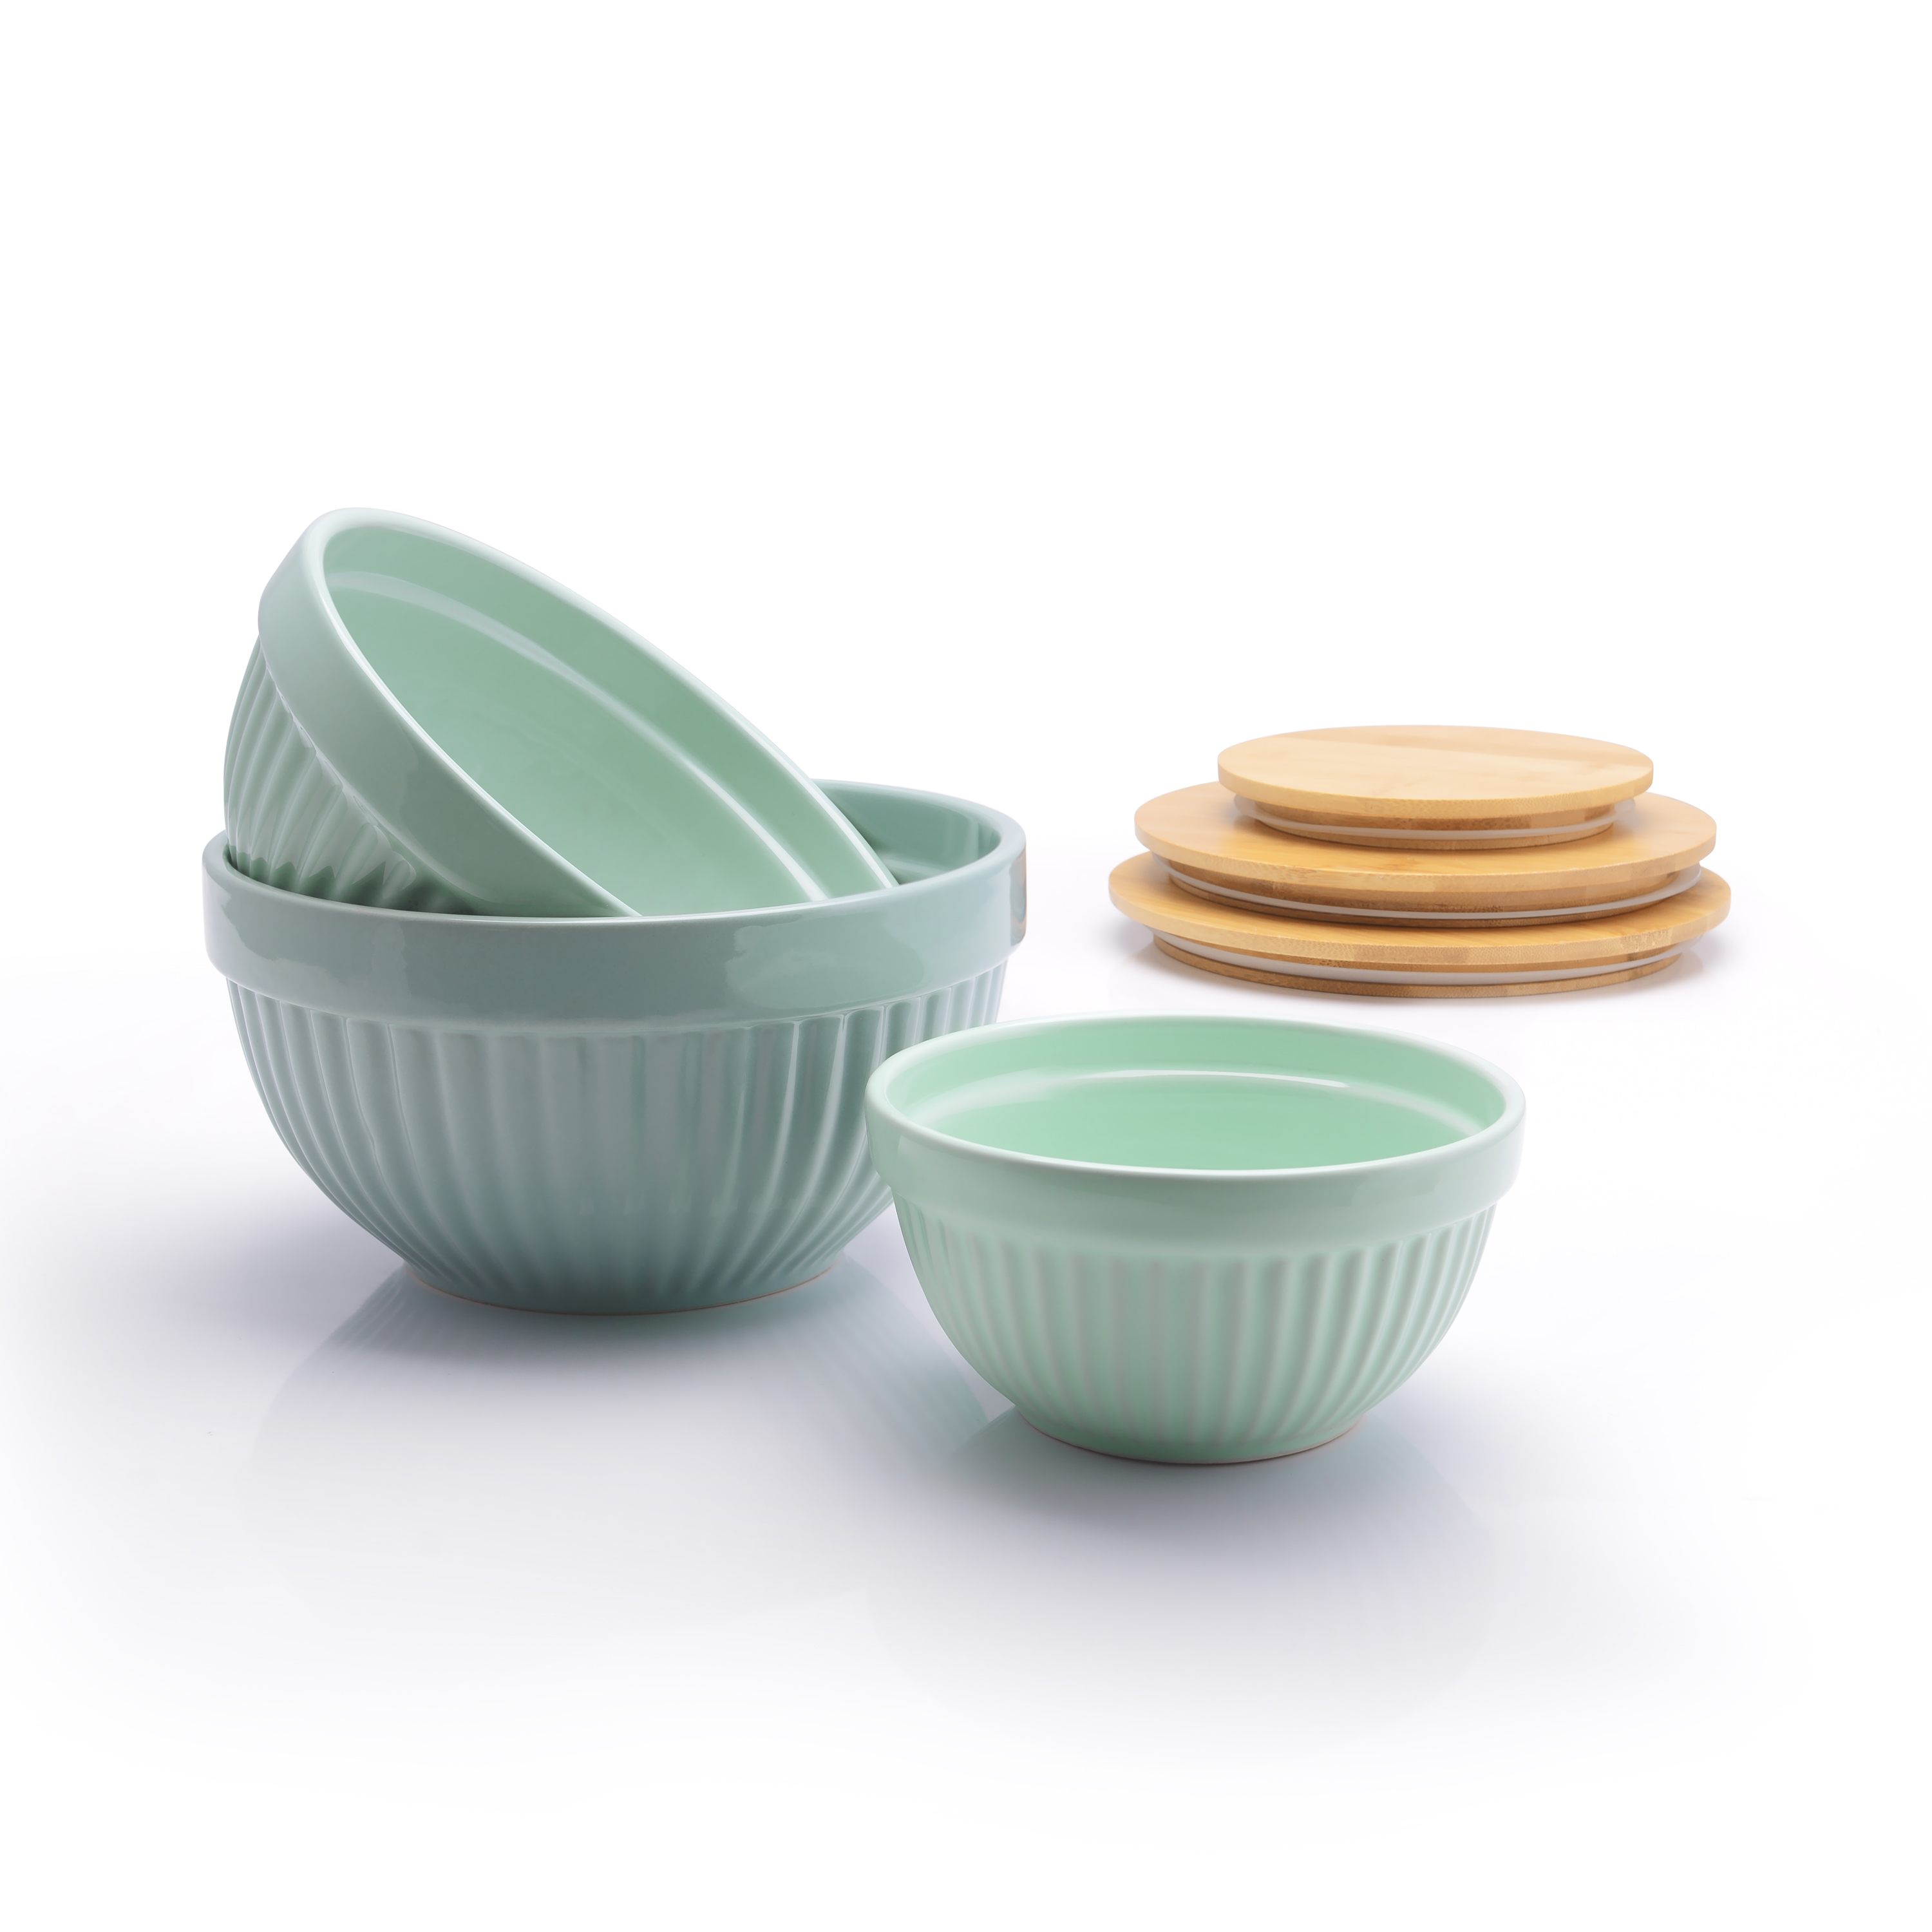 Better Homes & Gardens 3 Piece Ceramic Mixing Bowl Set, Aqua - image 4 of 8